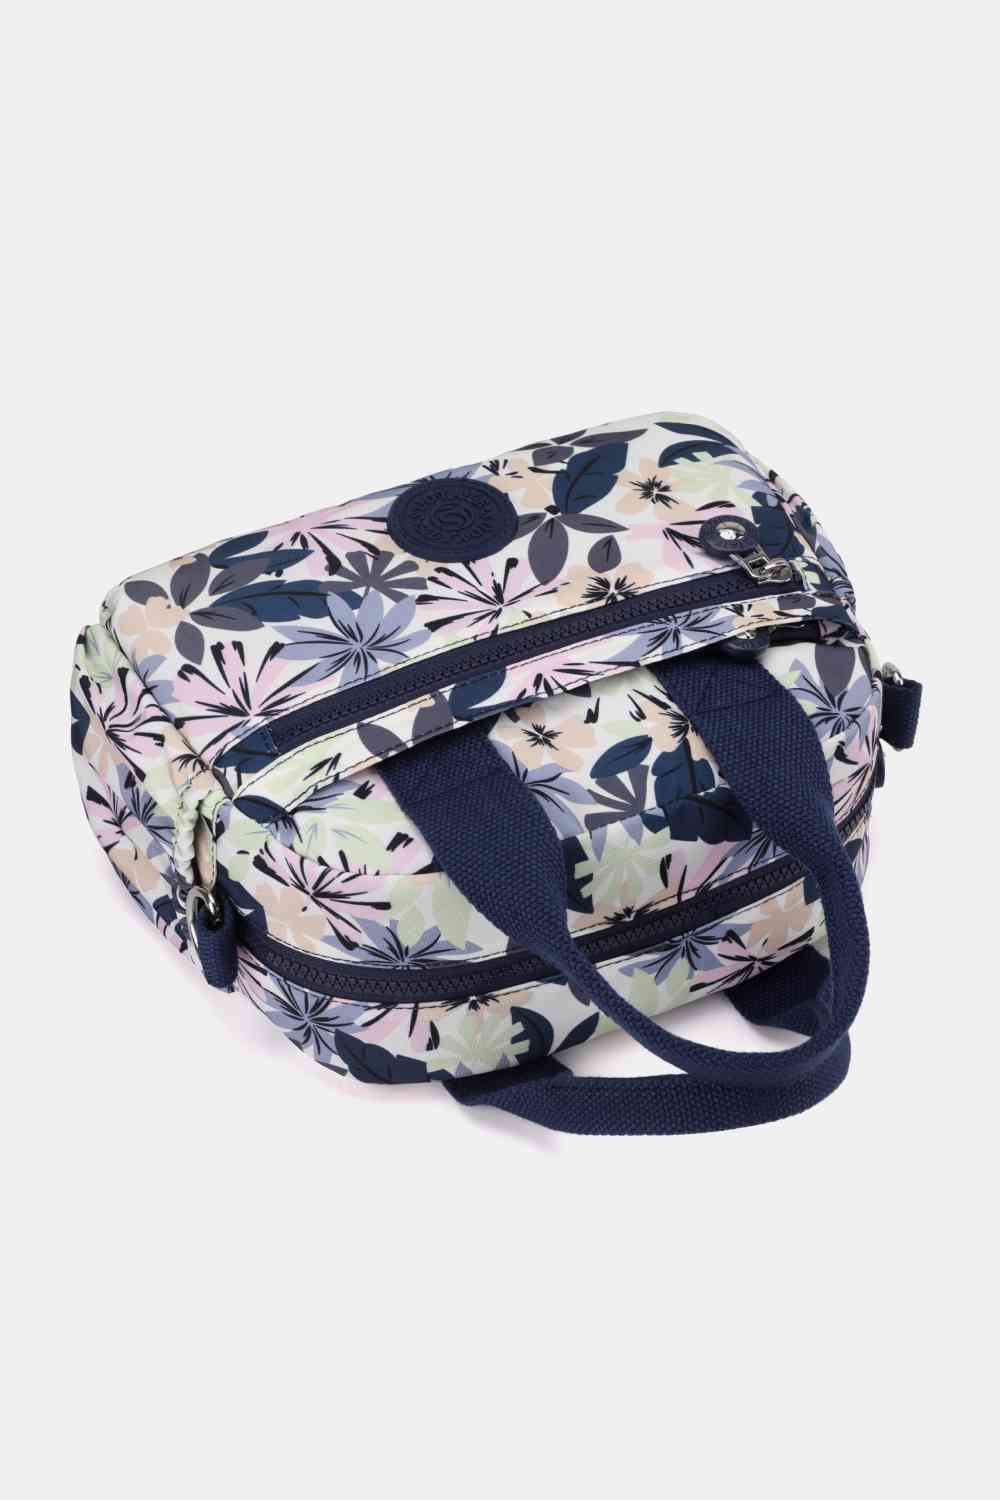 Floral Nylon Handbag - BloomBliss.com